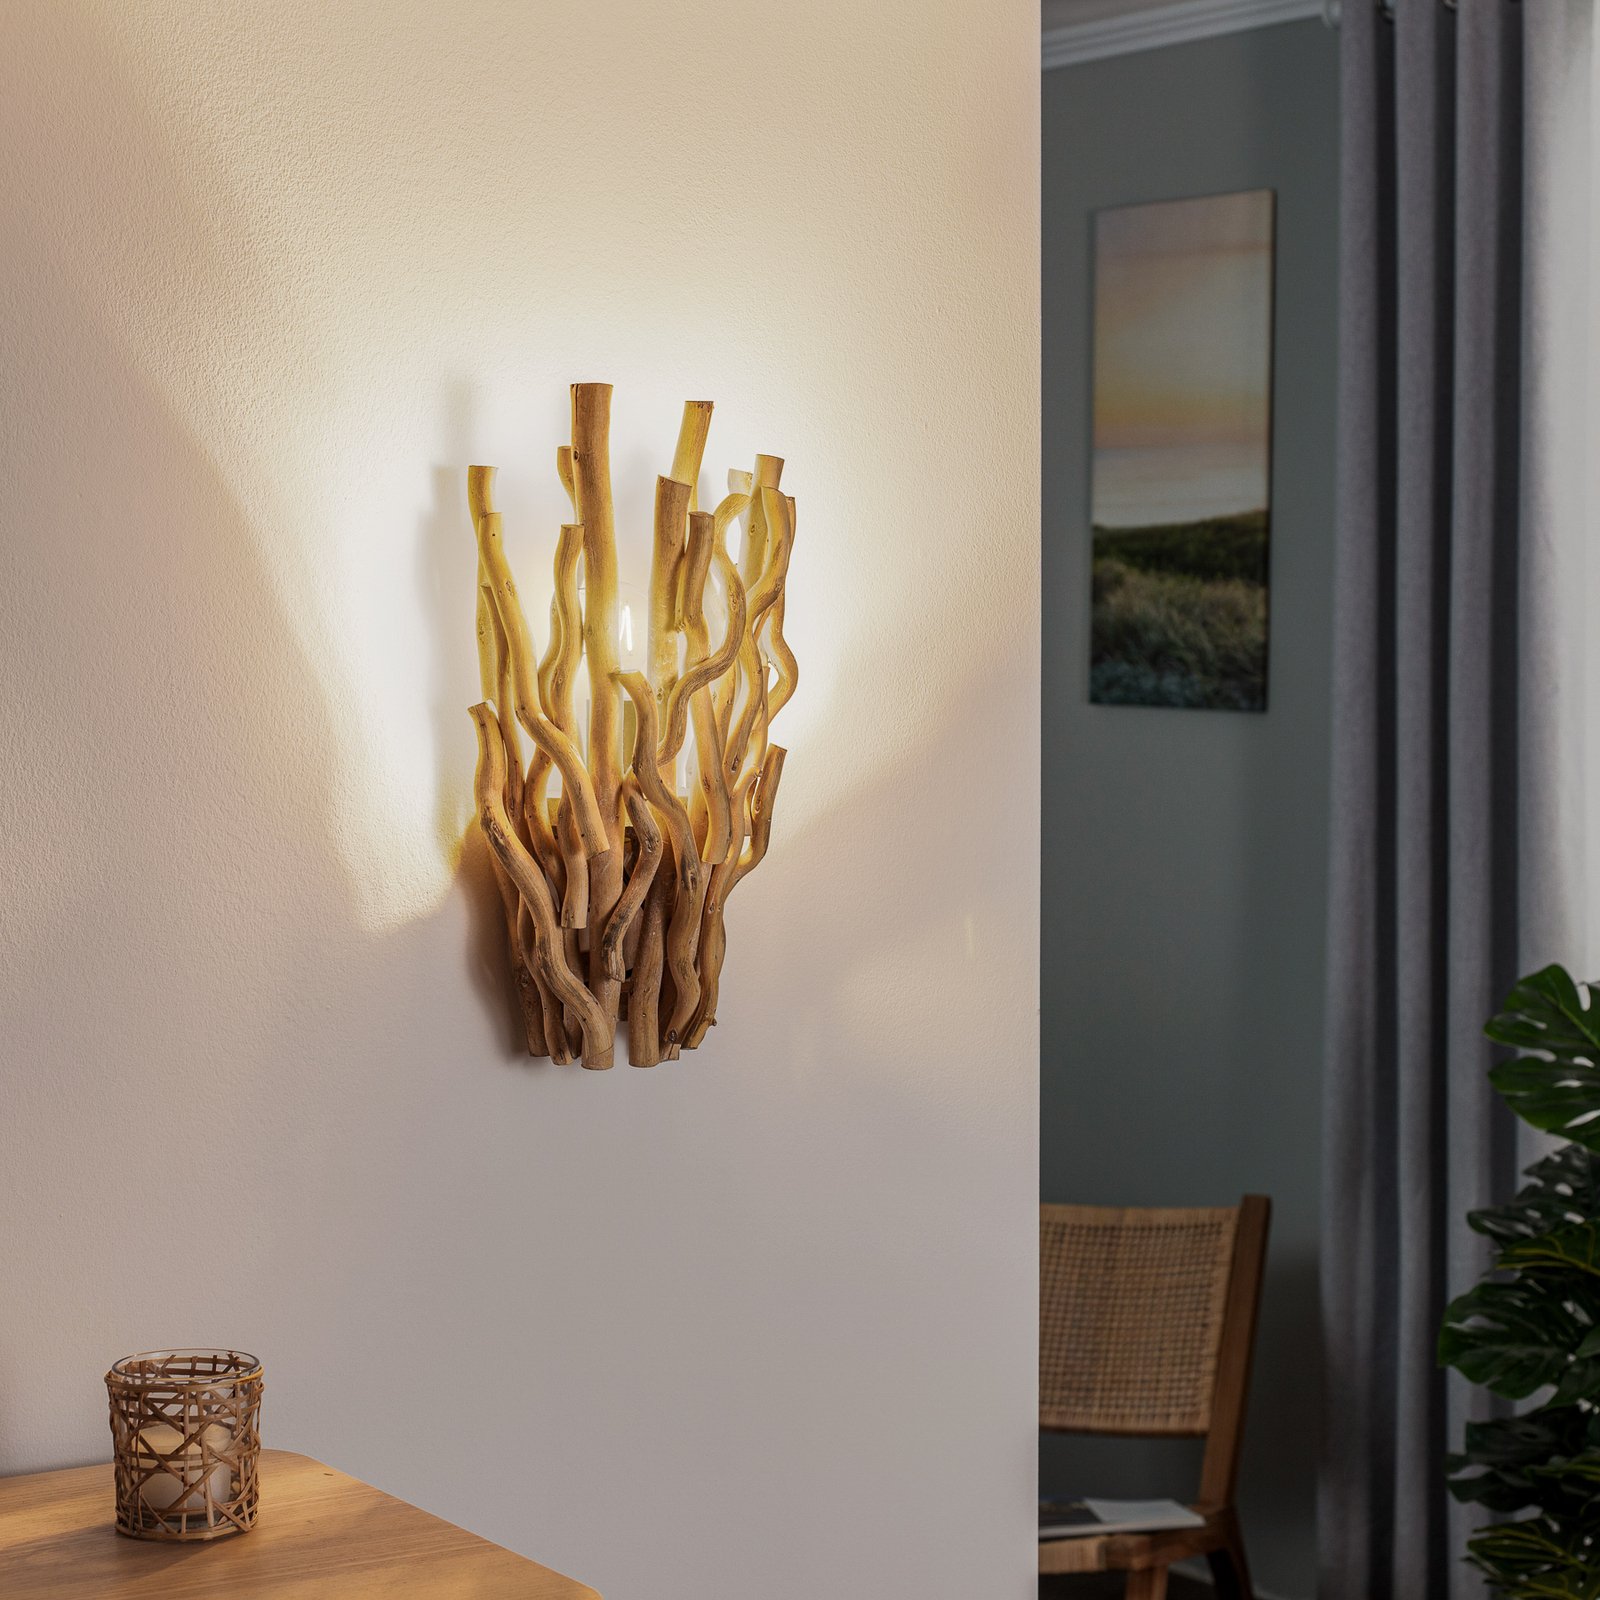 Agar wall light, lampshade made of wood